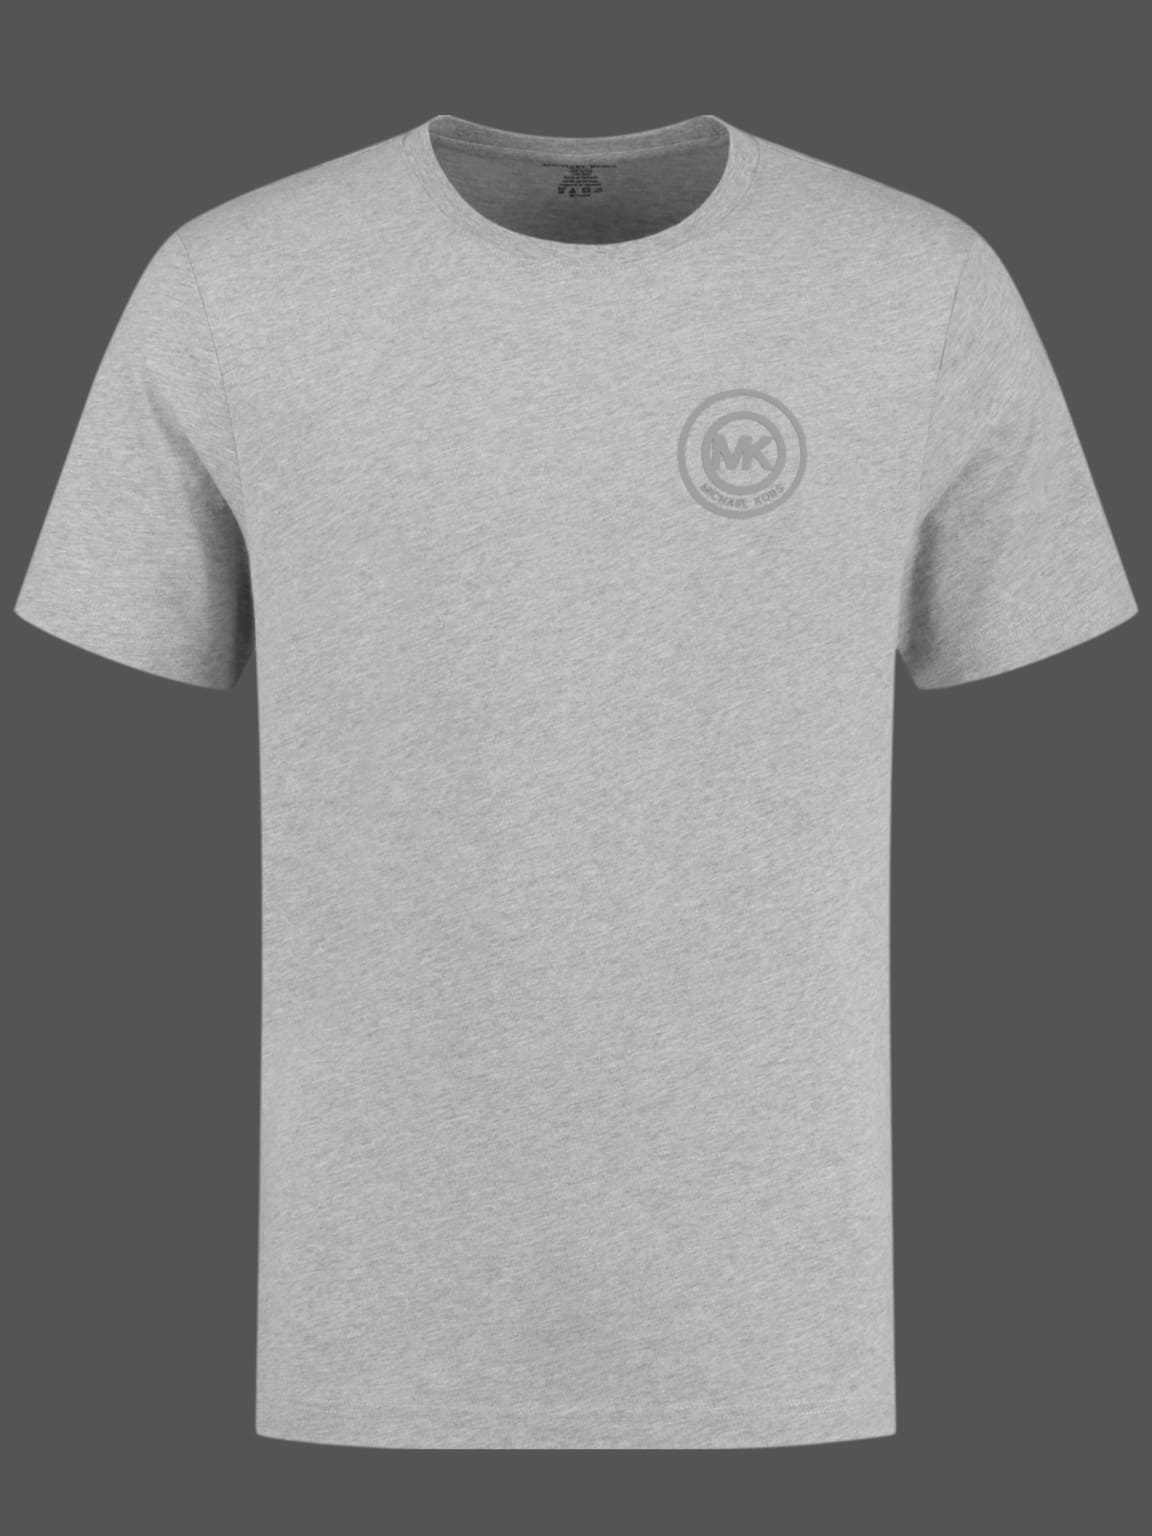 MICHAEL KORS tshirt for men  White  Michael Kors tshirt CS351I9FV4  online on GIGLIOCOM